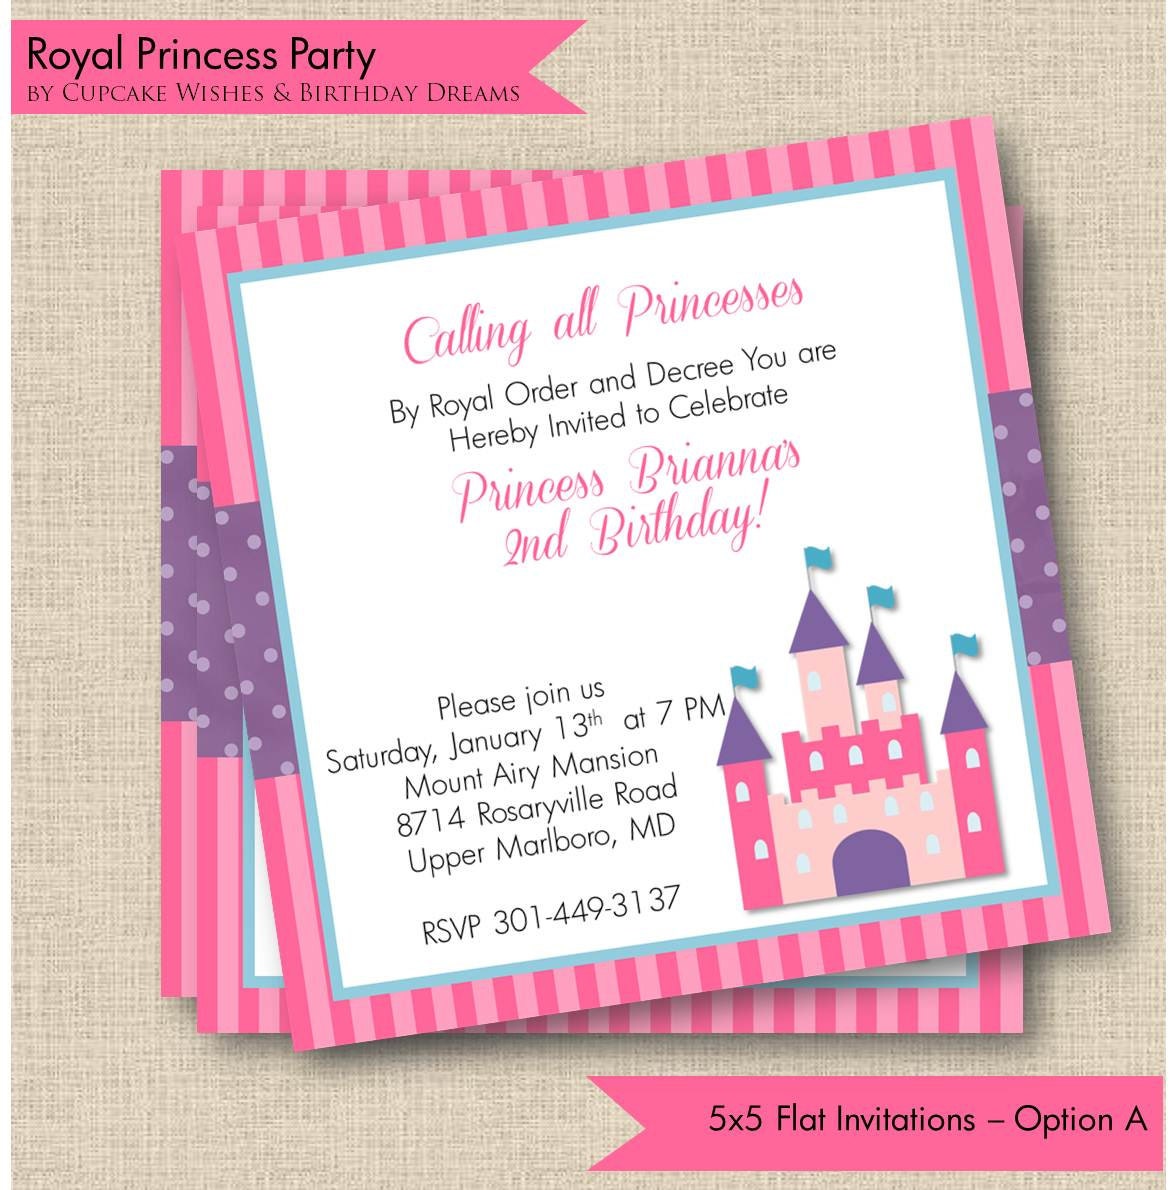 Royal Princess Printable Party Invitations 